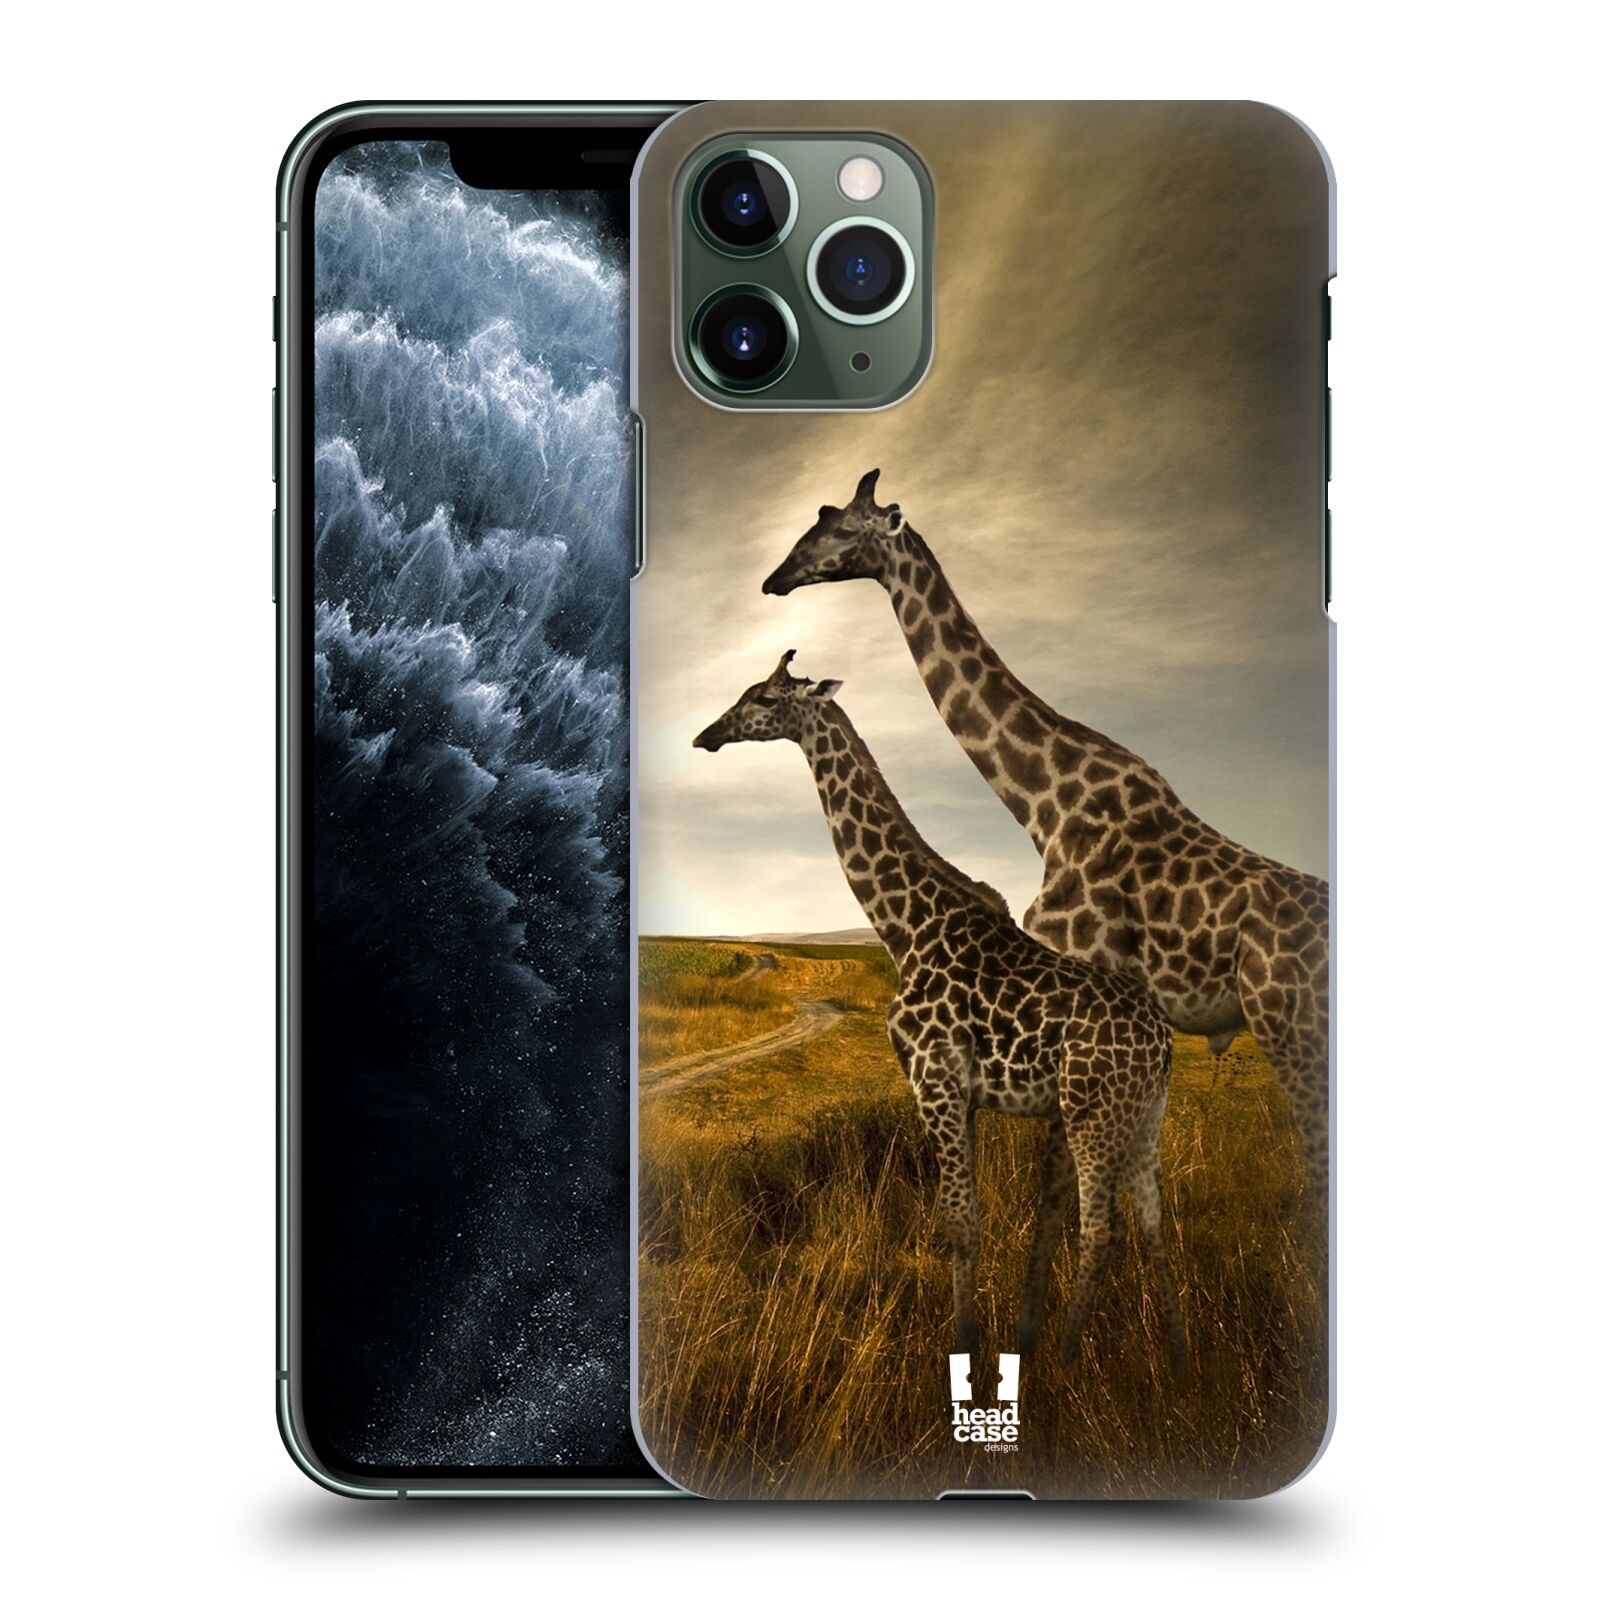 Zadní obal pro mobil Apple Iphone 11 PRO MAX - HEAD CASE - Svět zvířat žirafy